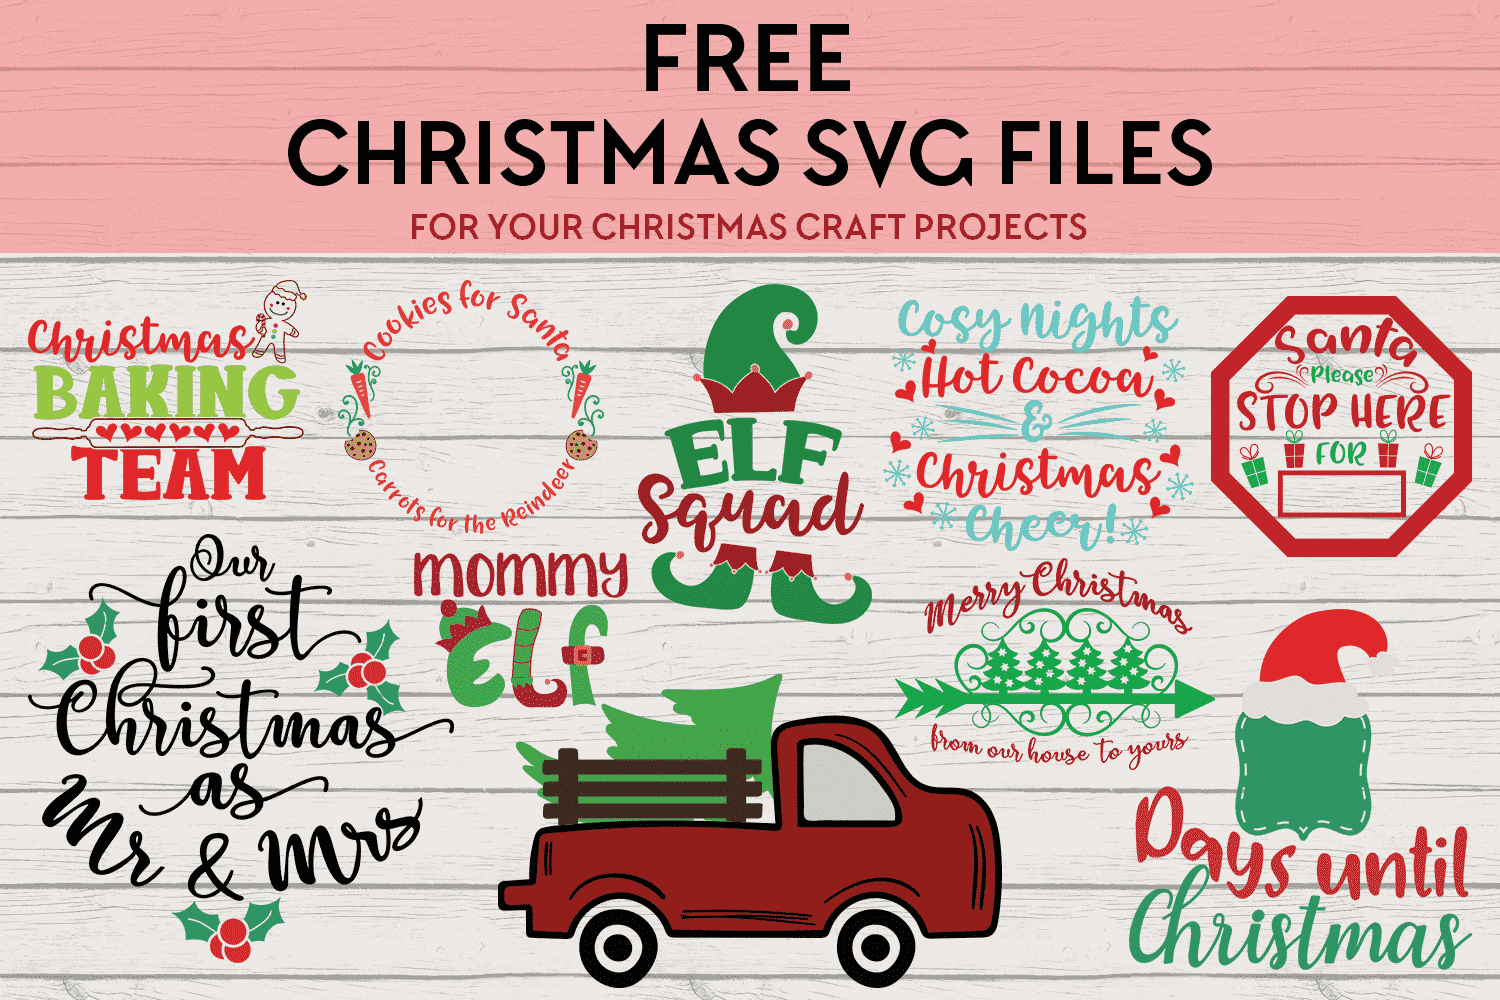 Free Christmas svg files